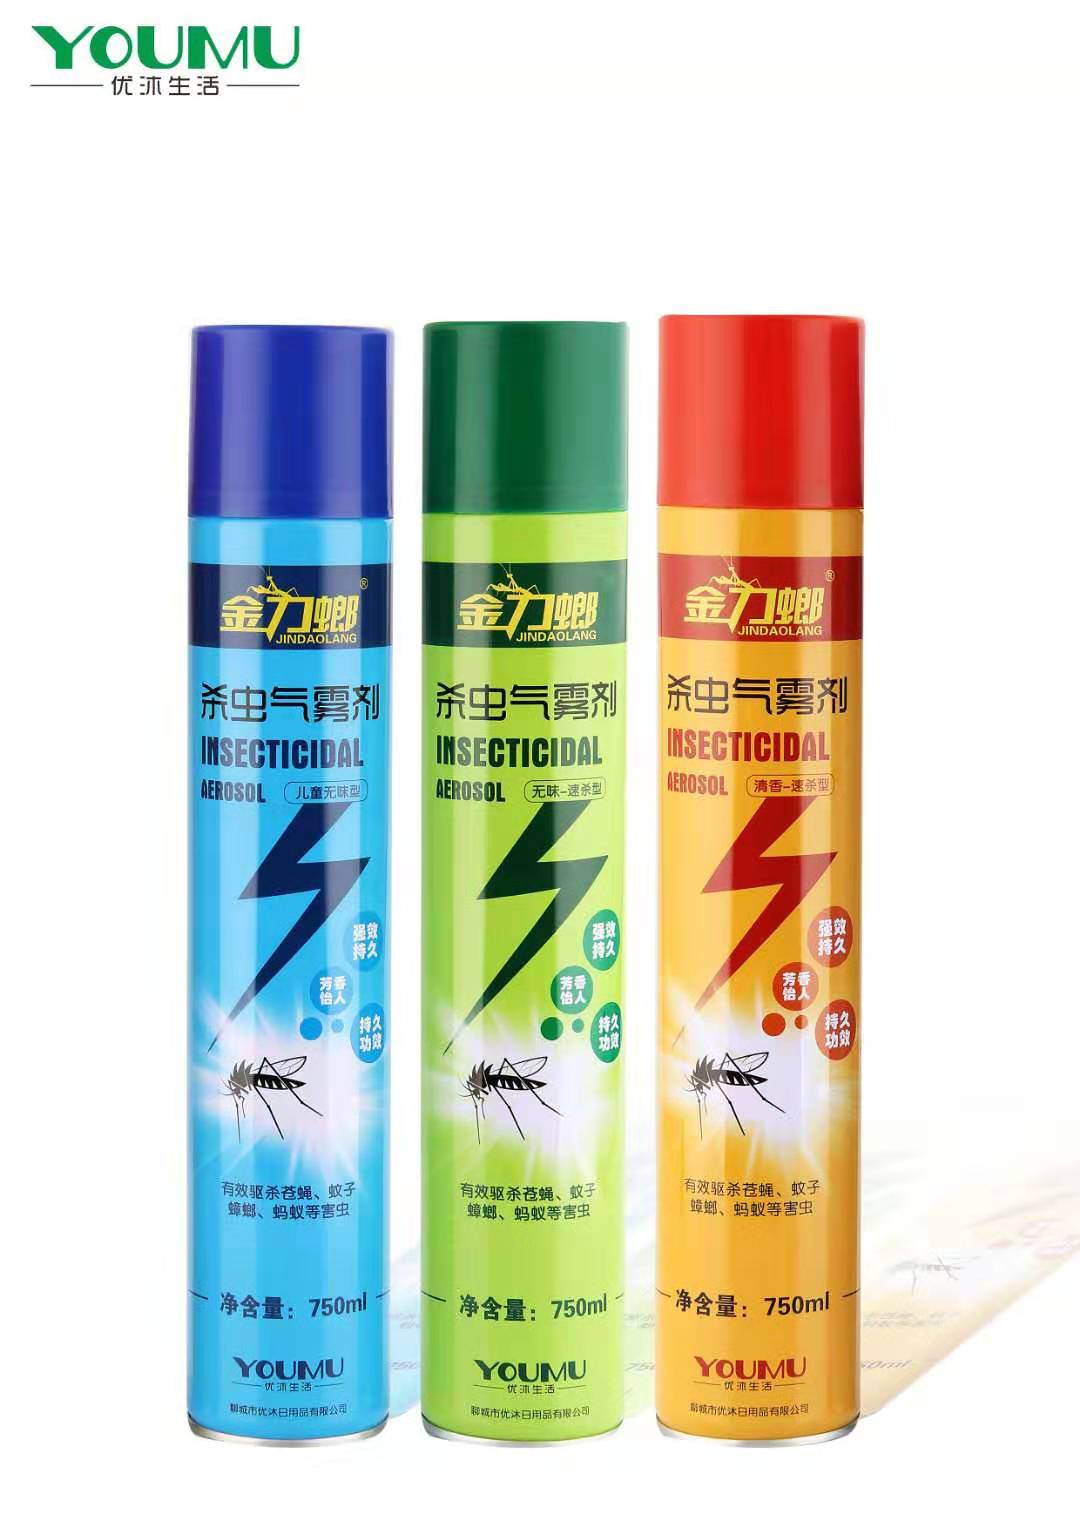 有效杀虫气雾剂 山东杀虫剂厂家供货 24瓶油剂 750ml 安全杀灭蚊蝇3